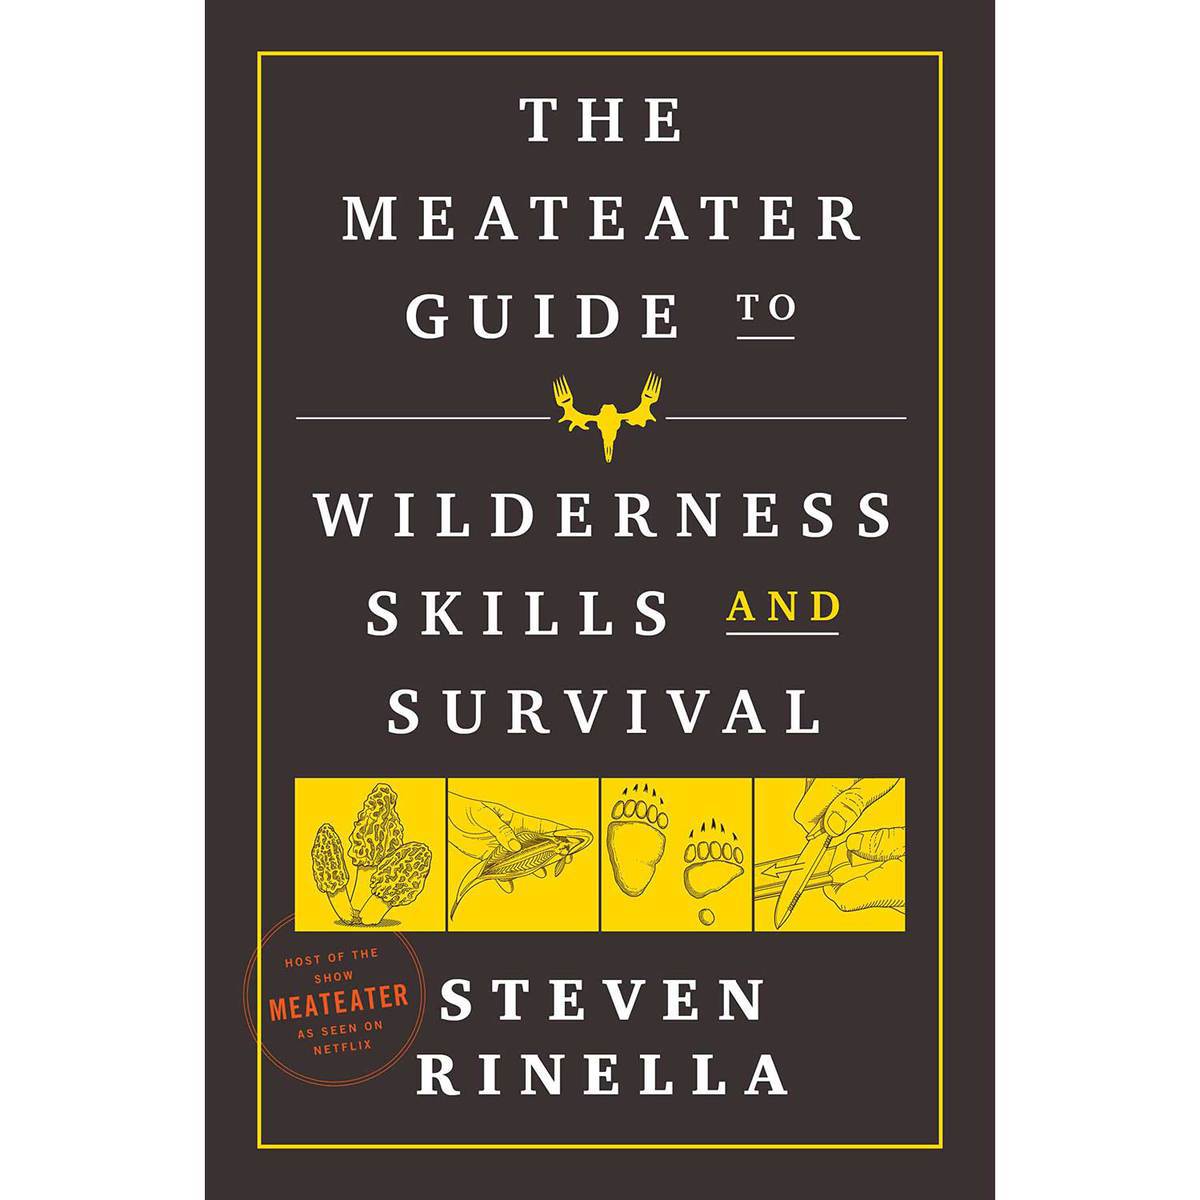 https://www.sportsmans.com/medias/the-meateater-guide-to-wilderness-skills-and-survival-by-steven-rinella-paperback-1658703-1.jpg?context=bWFzdGVyfGltYWdlc3w4Njk2NnxpbWFnZS9qcGVnfGltYWdlcy9oOTUvaDdiLzk2Mjc0NDI2MTAyMDYuanBnfDI4MjJlZDk1NWIzMWUwODk5ZDJkOGM4MmQ1MzA2ZTliMTIwY2I1OGUwYzkxOGJlNzAyYzE5NjMyMDE3NWI2YzY